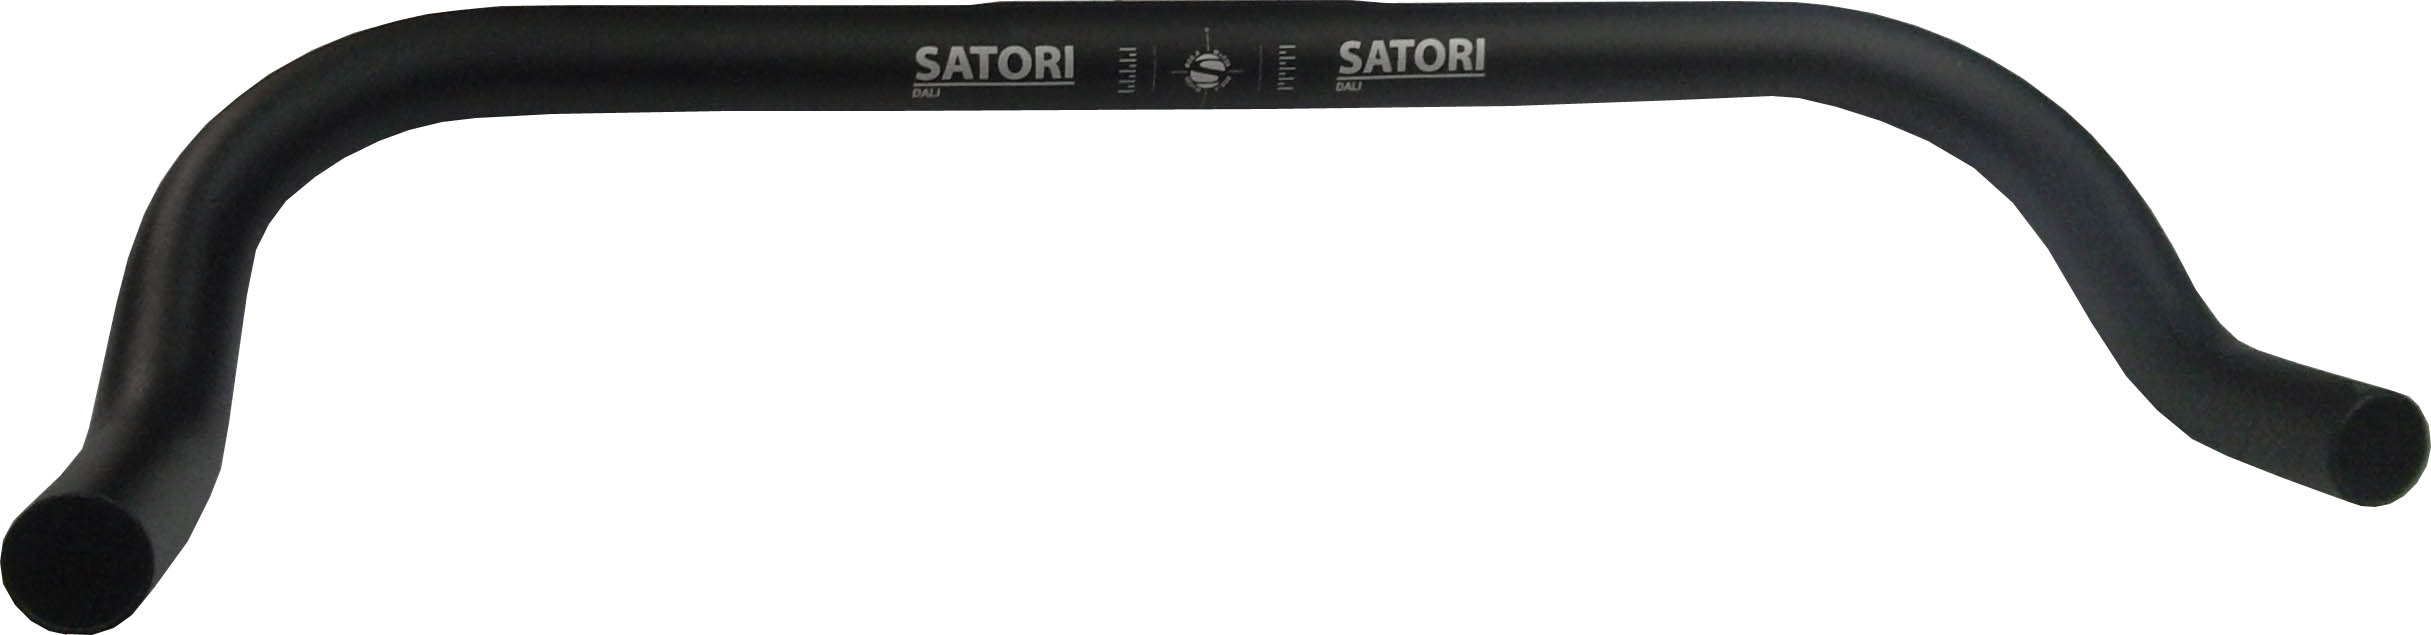 Руль Ø25.4x440мм, чёрный, лого Satori.